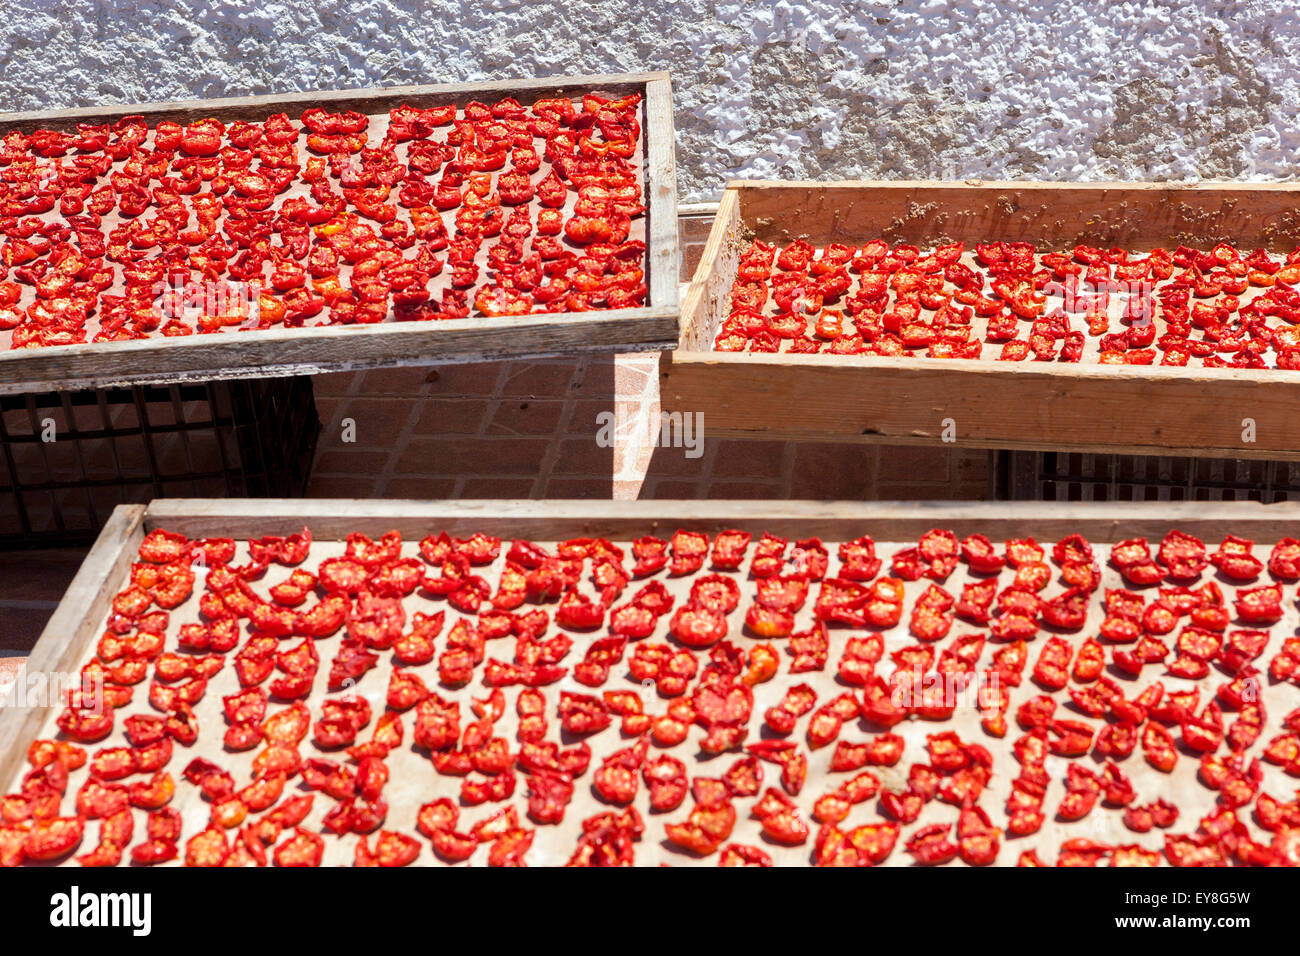 Tomates séchées au soleil dans la cuisine grecque Oia, Santorini tomates Grèce agriculture dans une petite ferme Banque D'Images